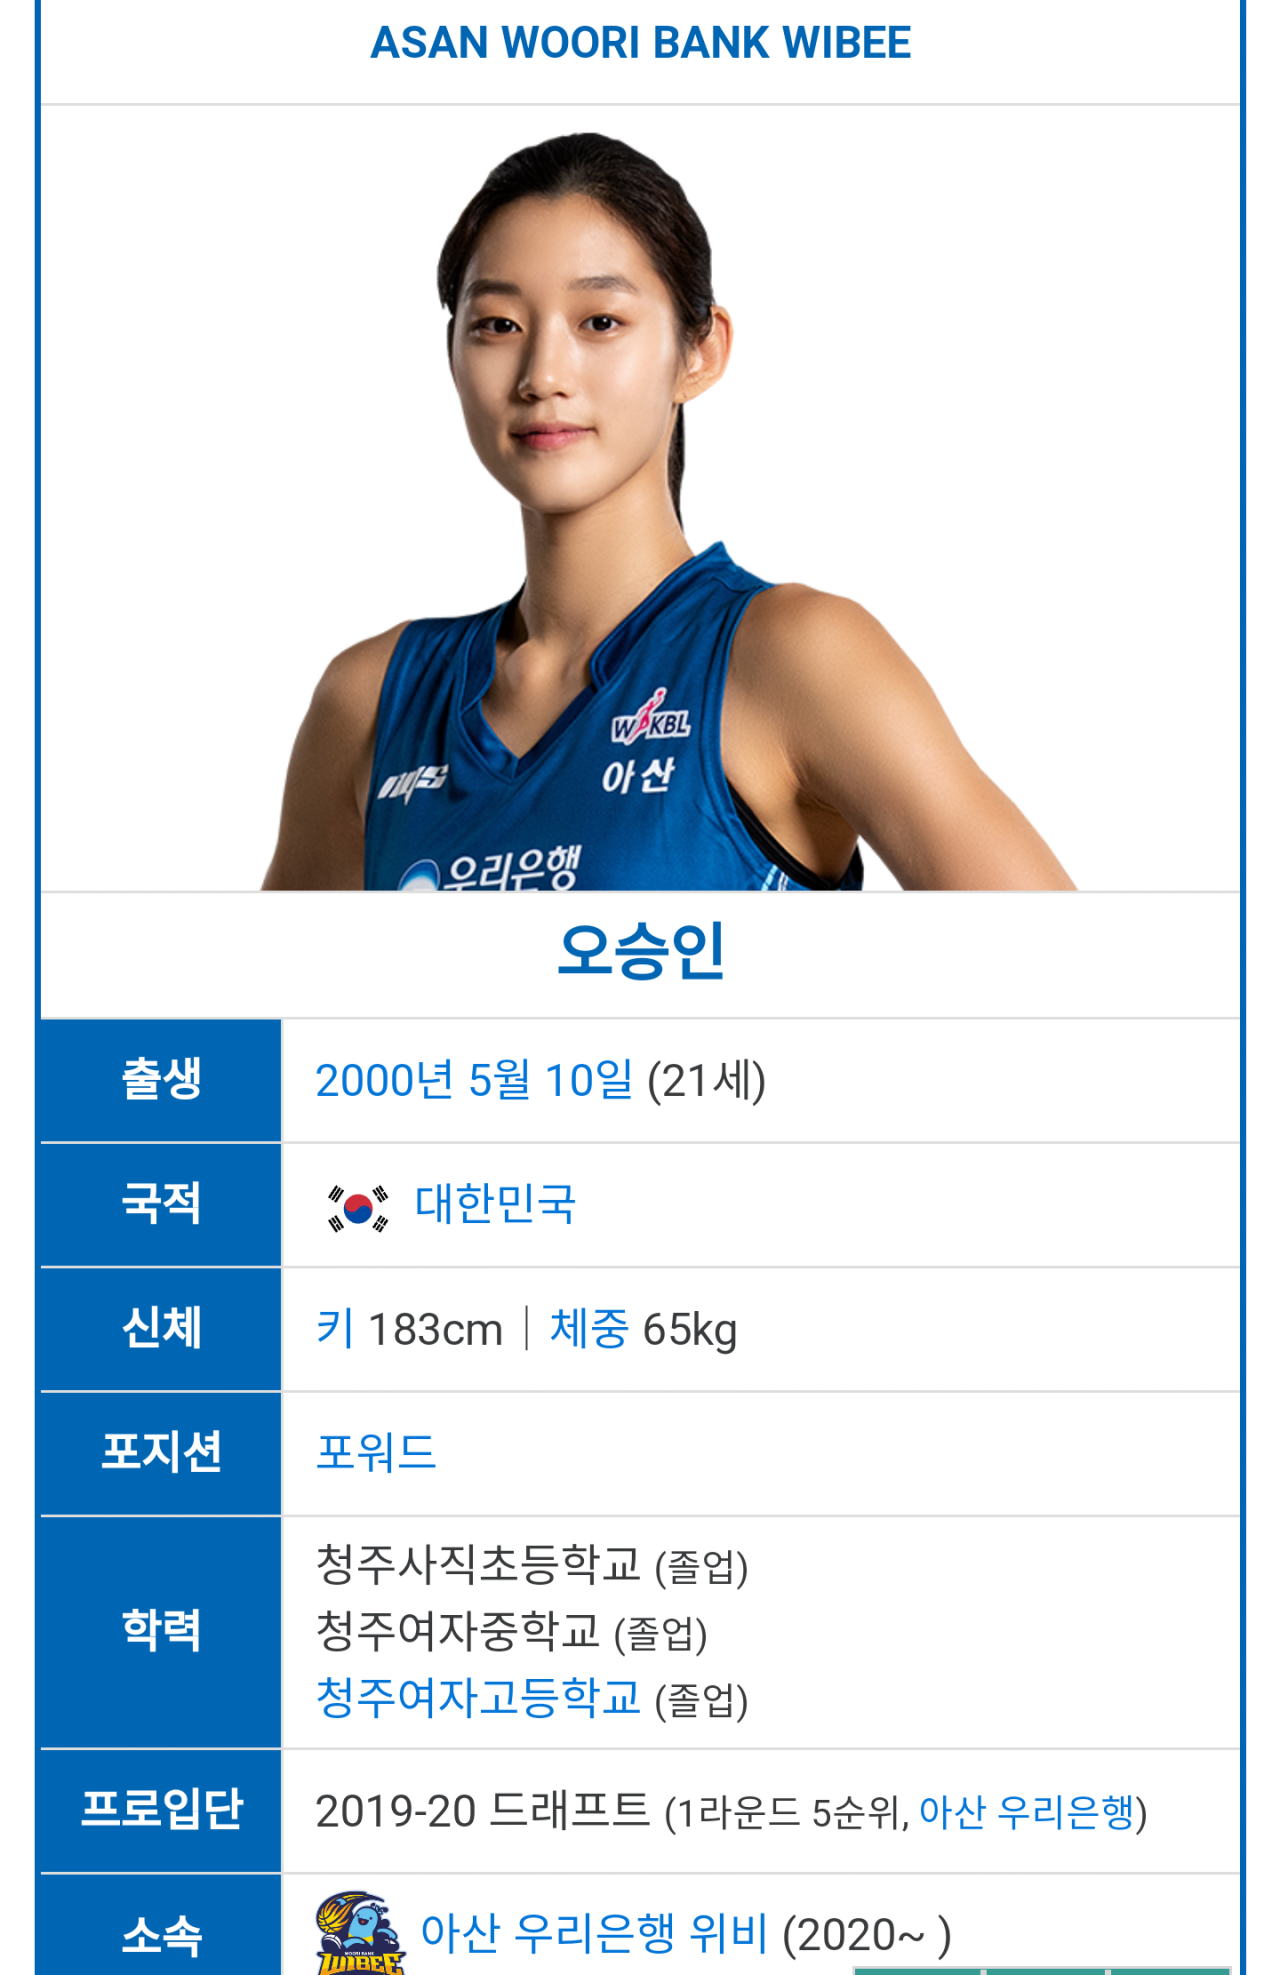 여자 농구선수 미모 1위